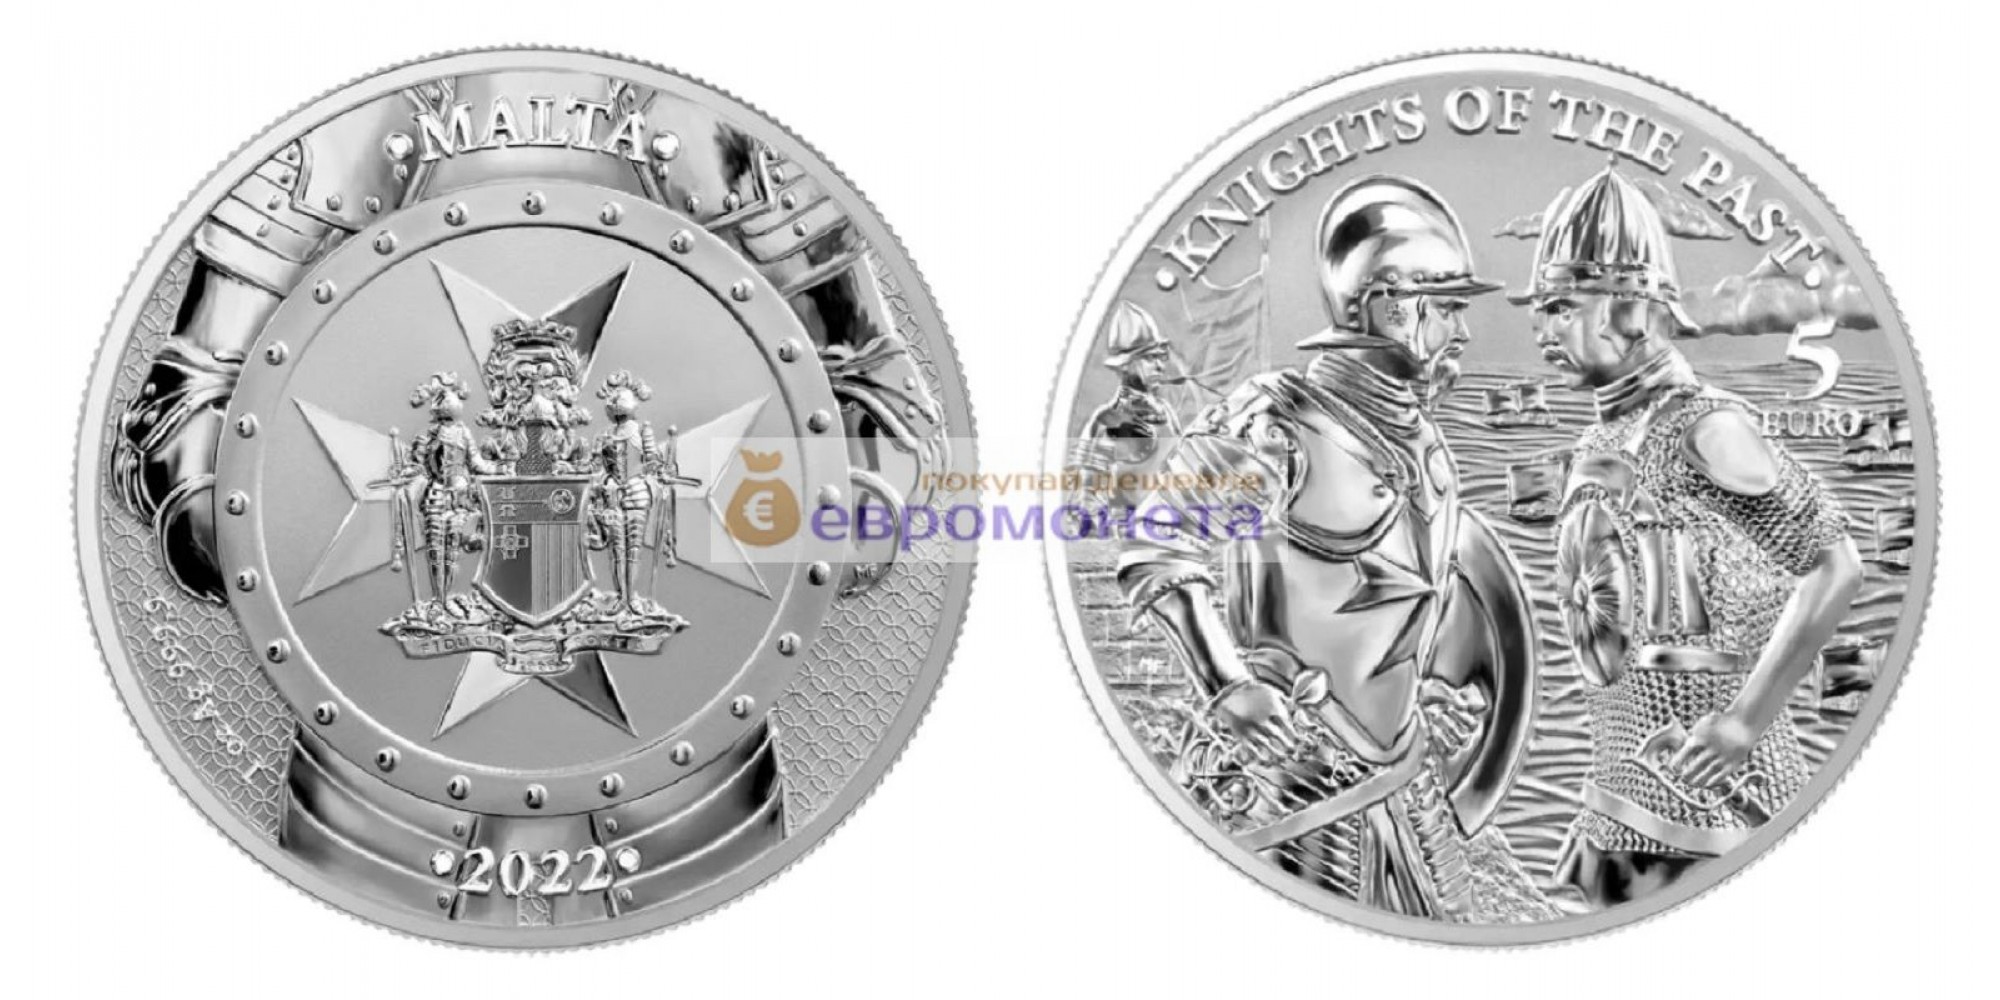 Мальта: Рыцари прошлого 5 евро 2022 год 1 унция серебра 9999 пробы. Germania Mint. тираж 15 000 шт.